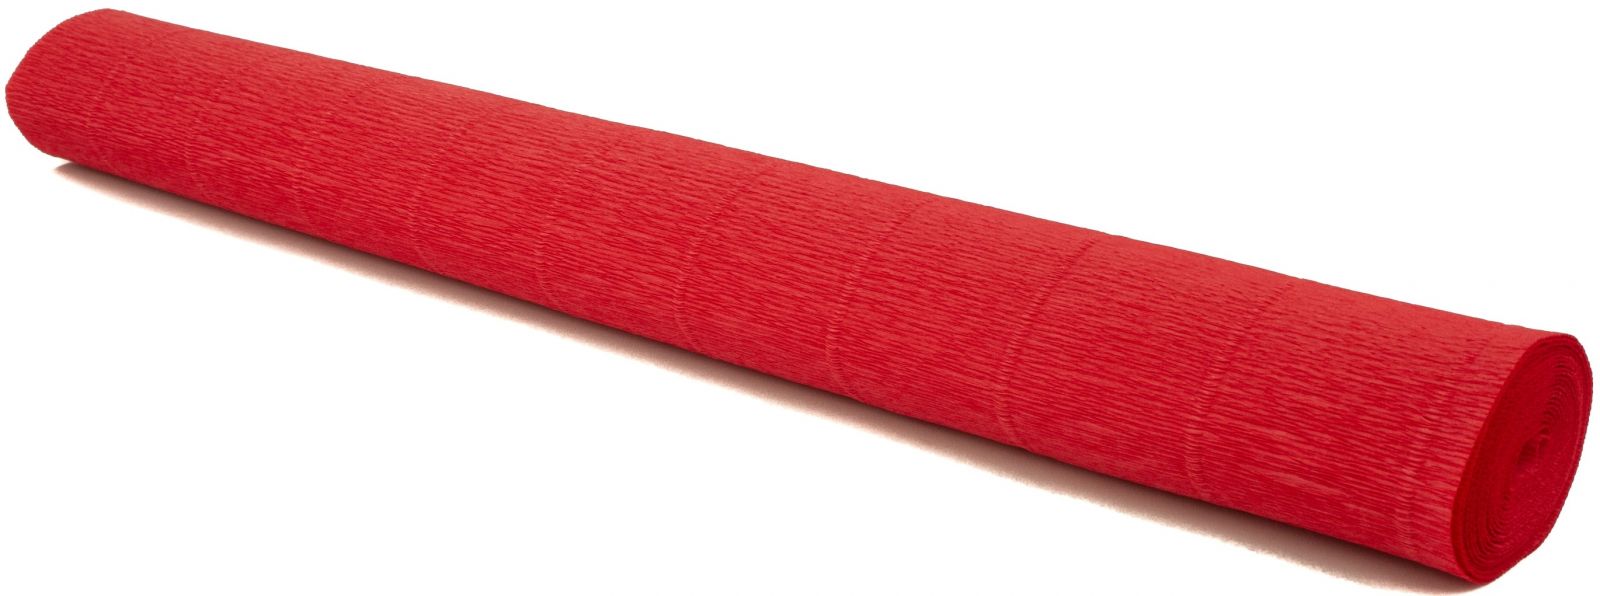 Krepový papír EXTRA pevný 180g, 50x200cm - k výrobě květů a jiné dekorace - Červený korál